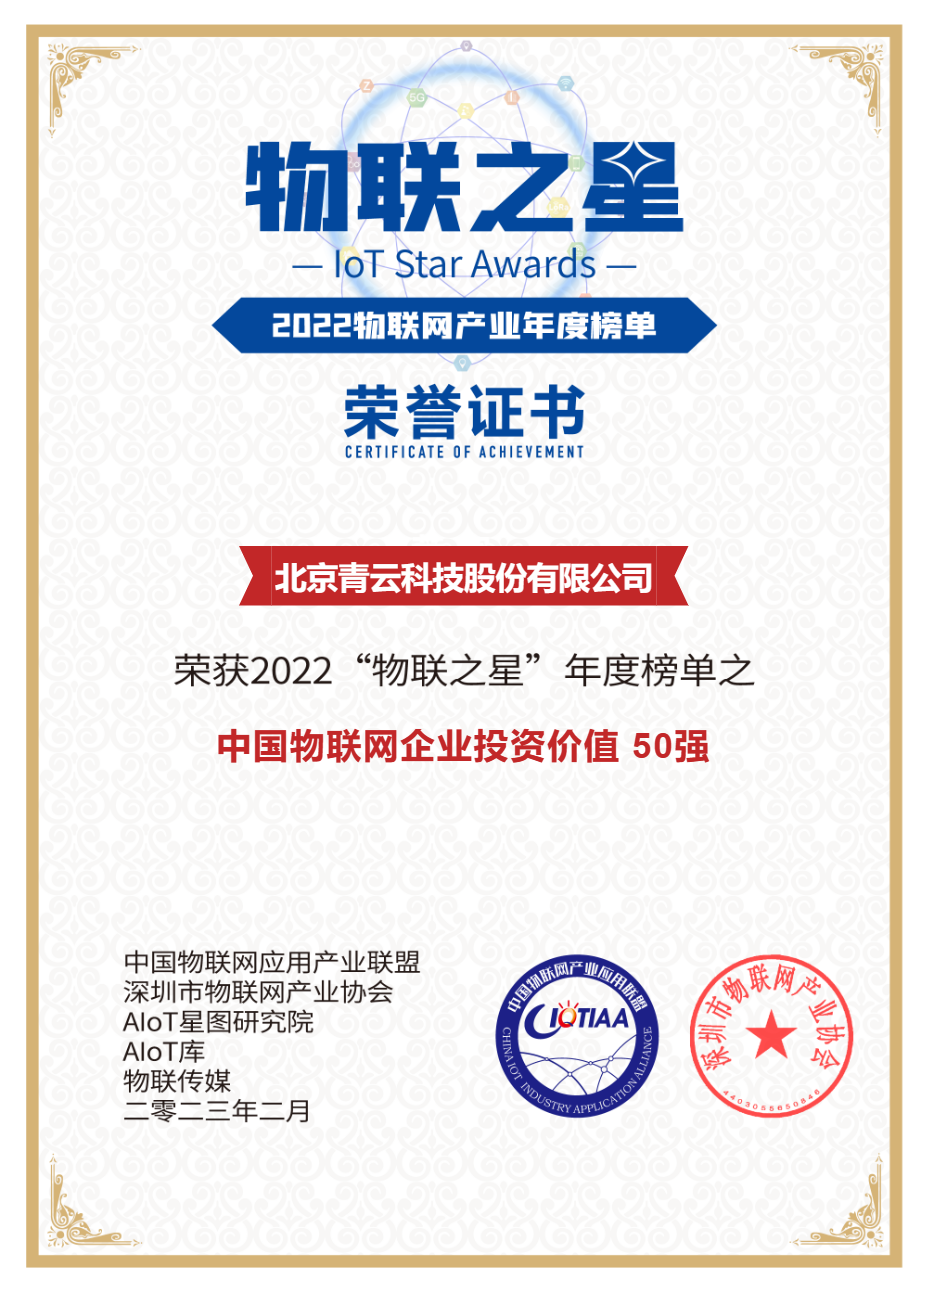 入选“物联之星”年度榜单，青云科技获评“中国物联网企业投资价值 50 强”